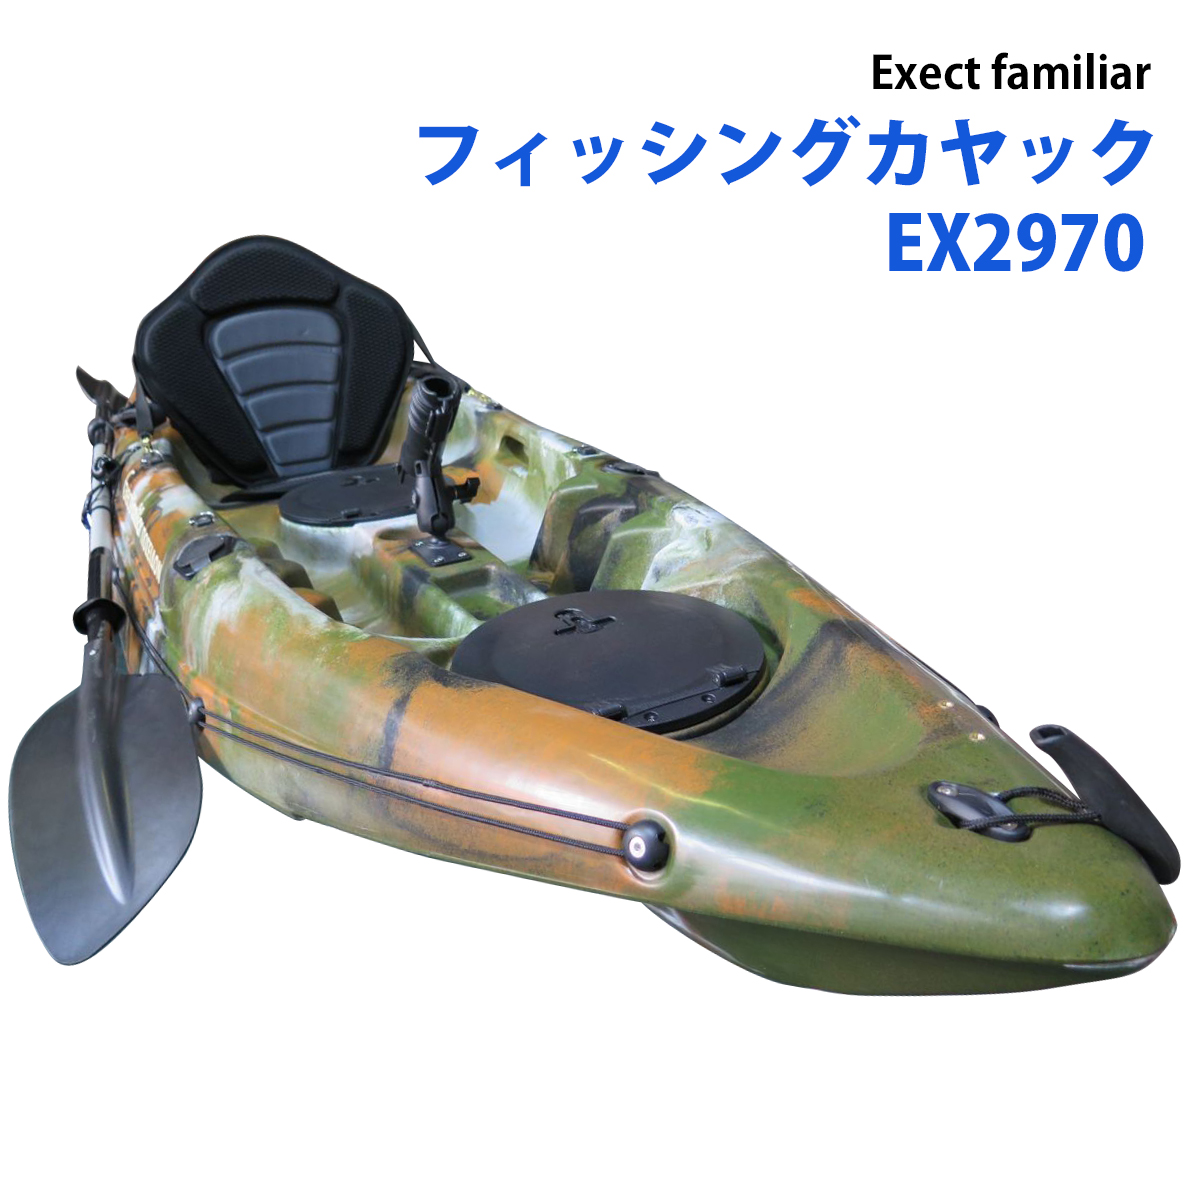 カヤック フィッシング 一人乗り EX2970 9ft ポセイドンfishing | Exect Familiar アウトドア・工具